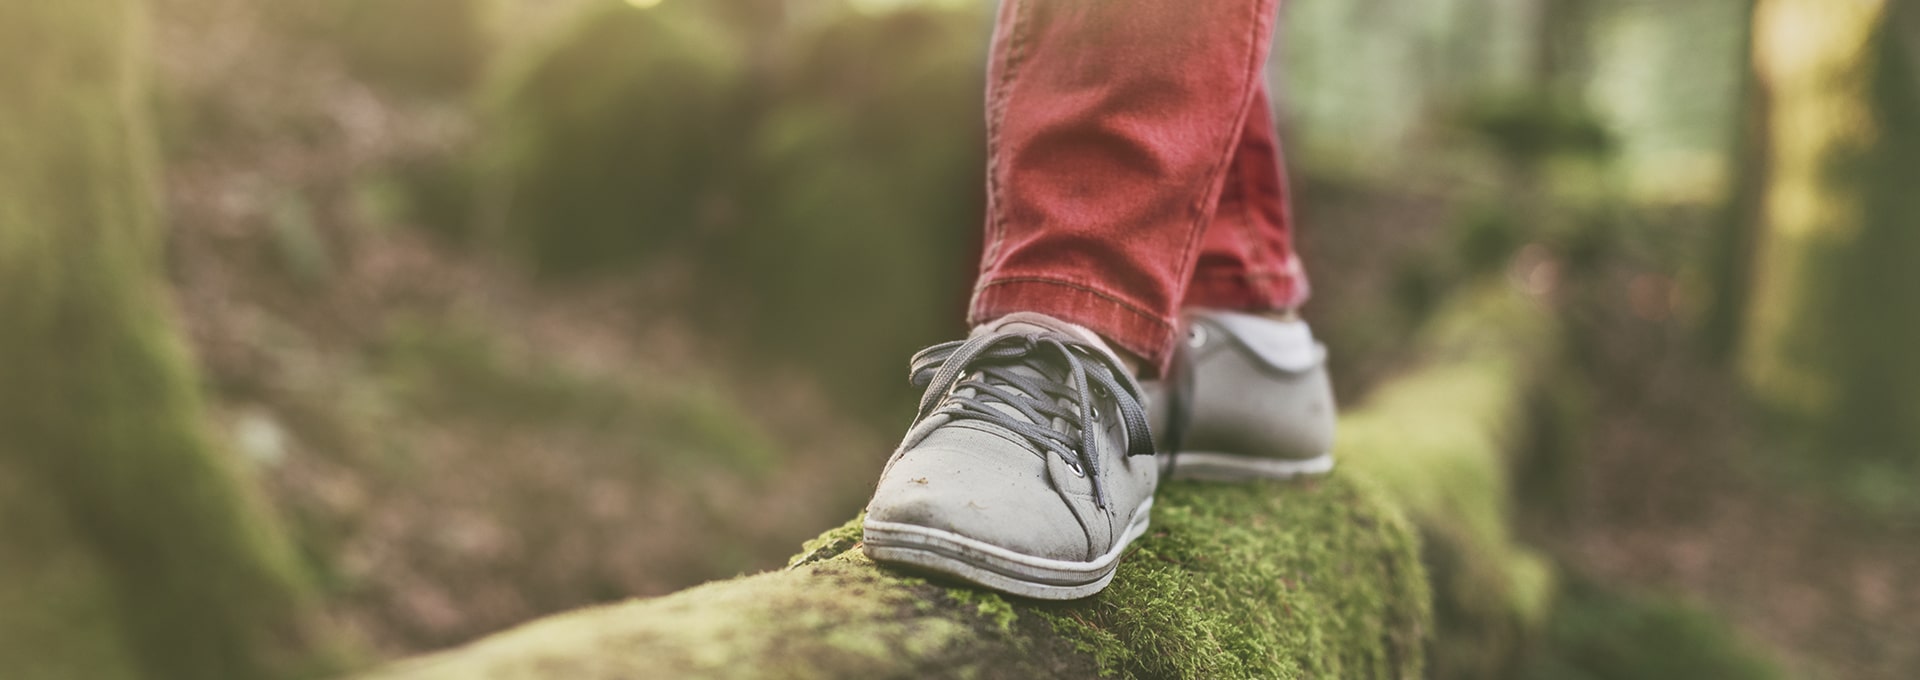 Pies con zapatos grises que se equilibran en un tronco de madera en el bosque